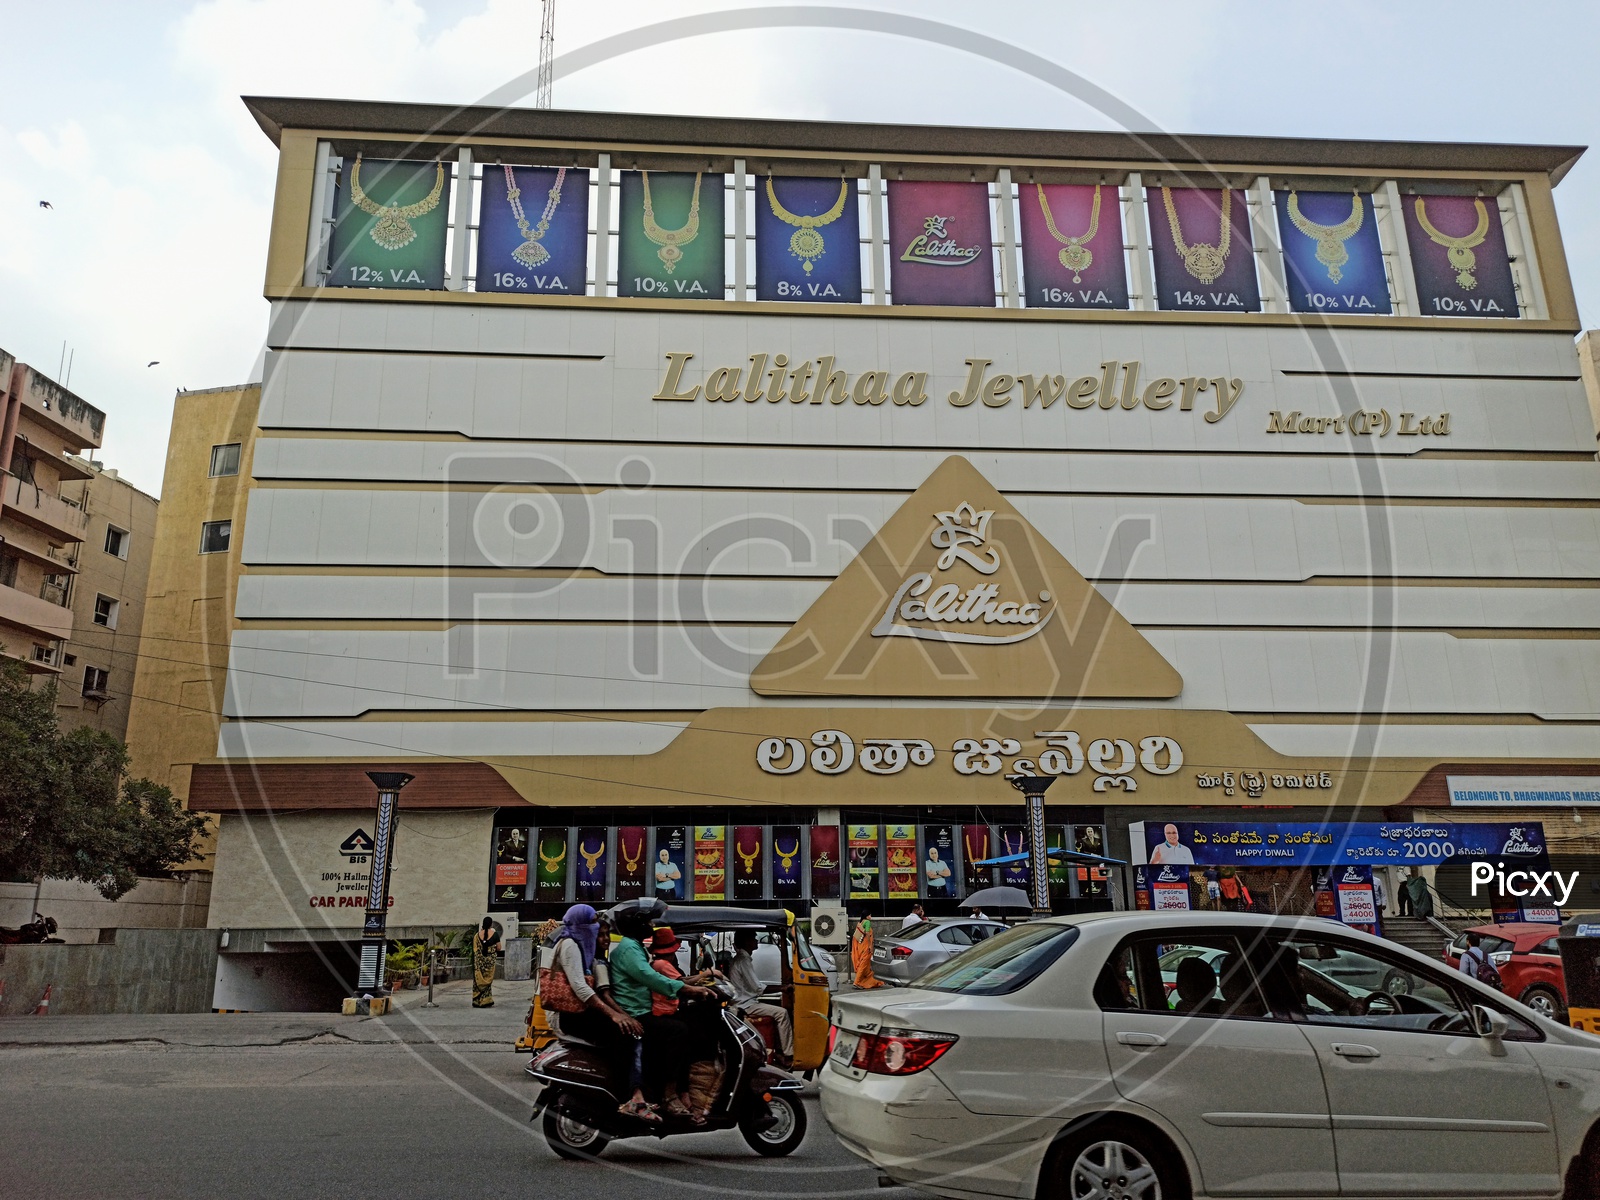 Lalithaa Jewellery Showroom Hyderabad